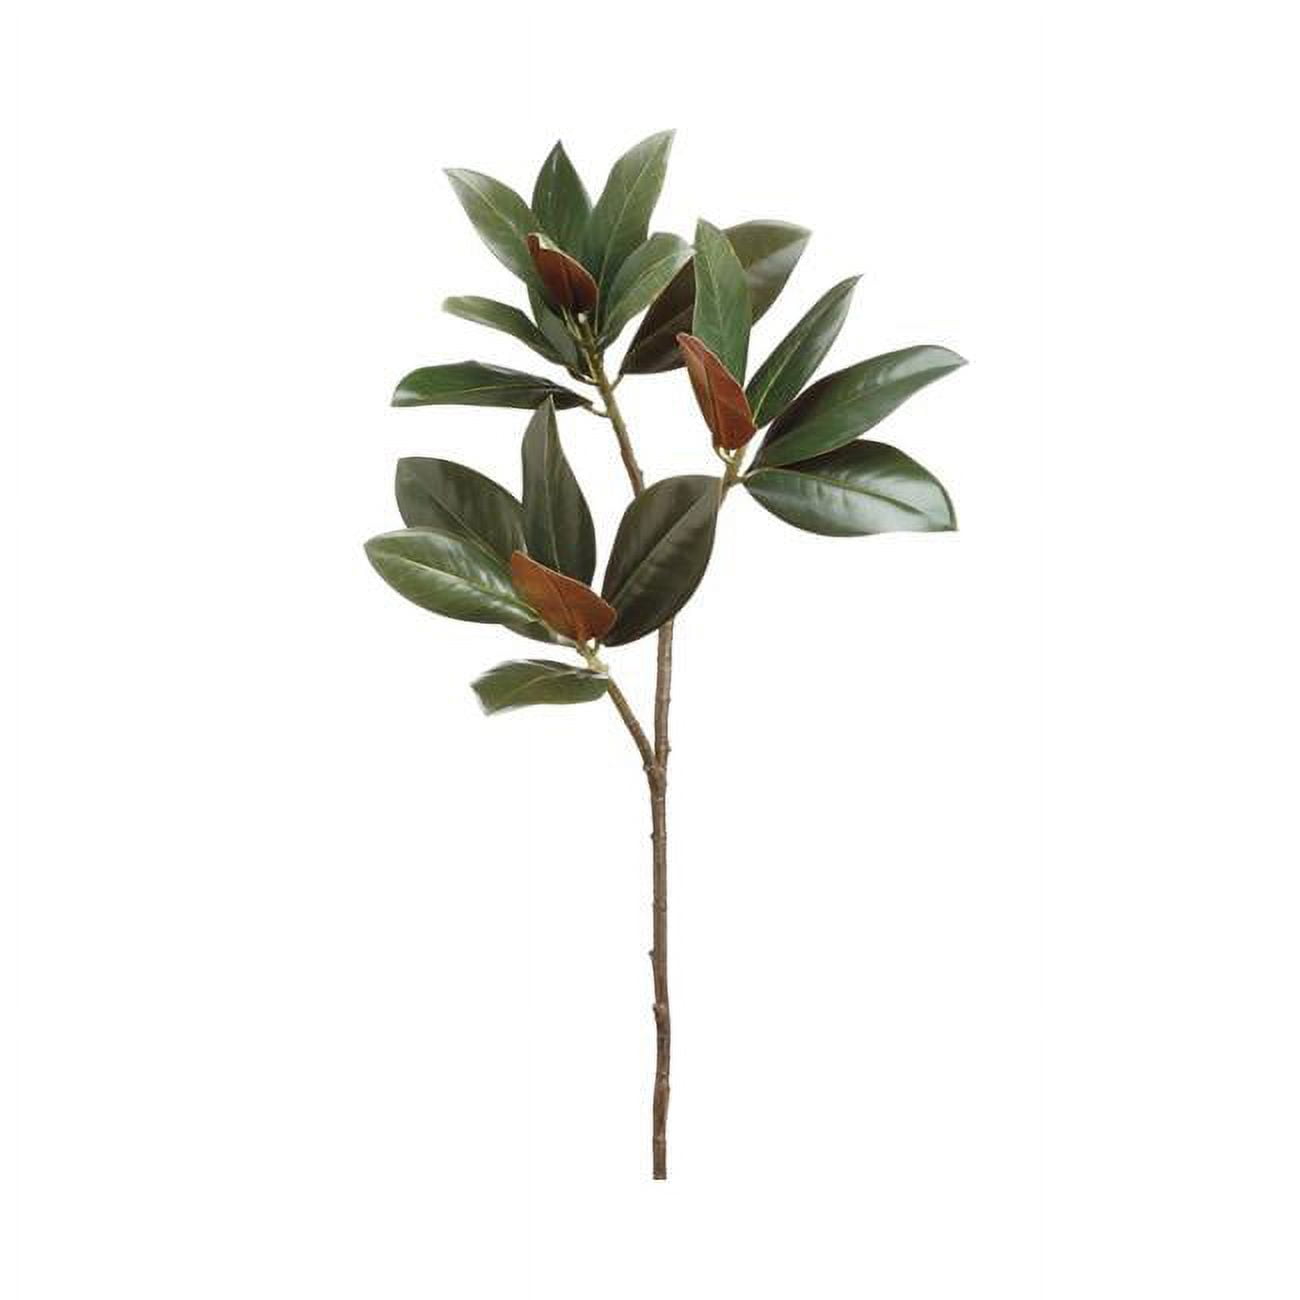 Picture of Allstate Floral & Craft PSM245-GR-DK 35 in. Silk Magnolia Leaf Stem - Dark Green